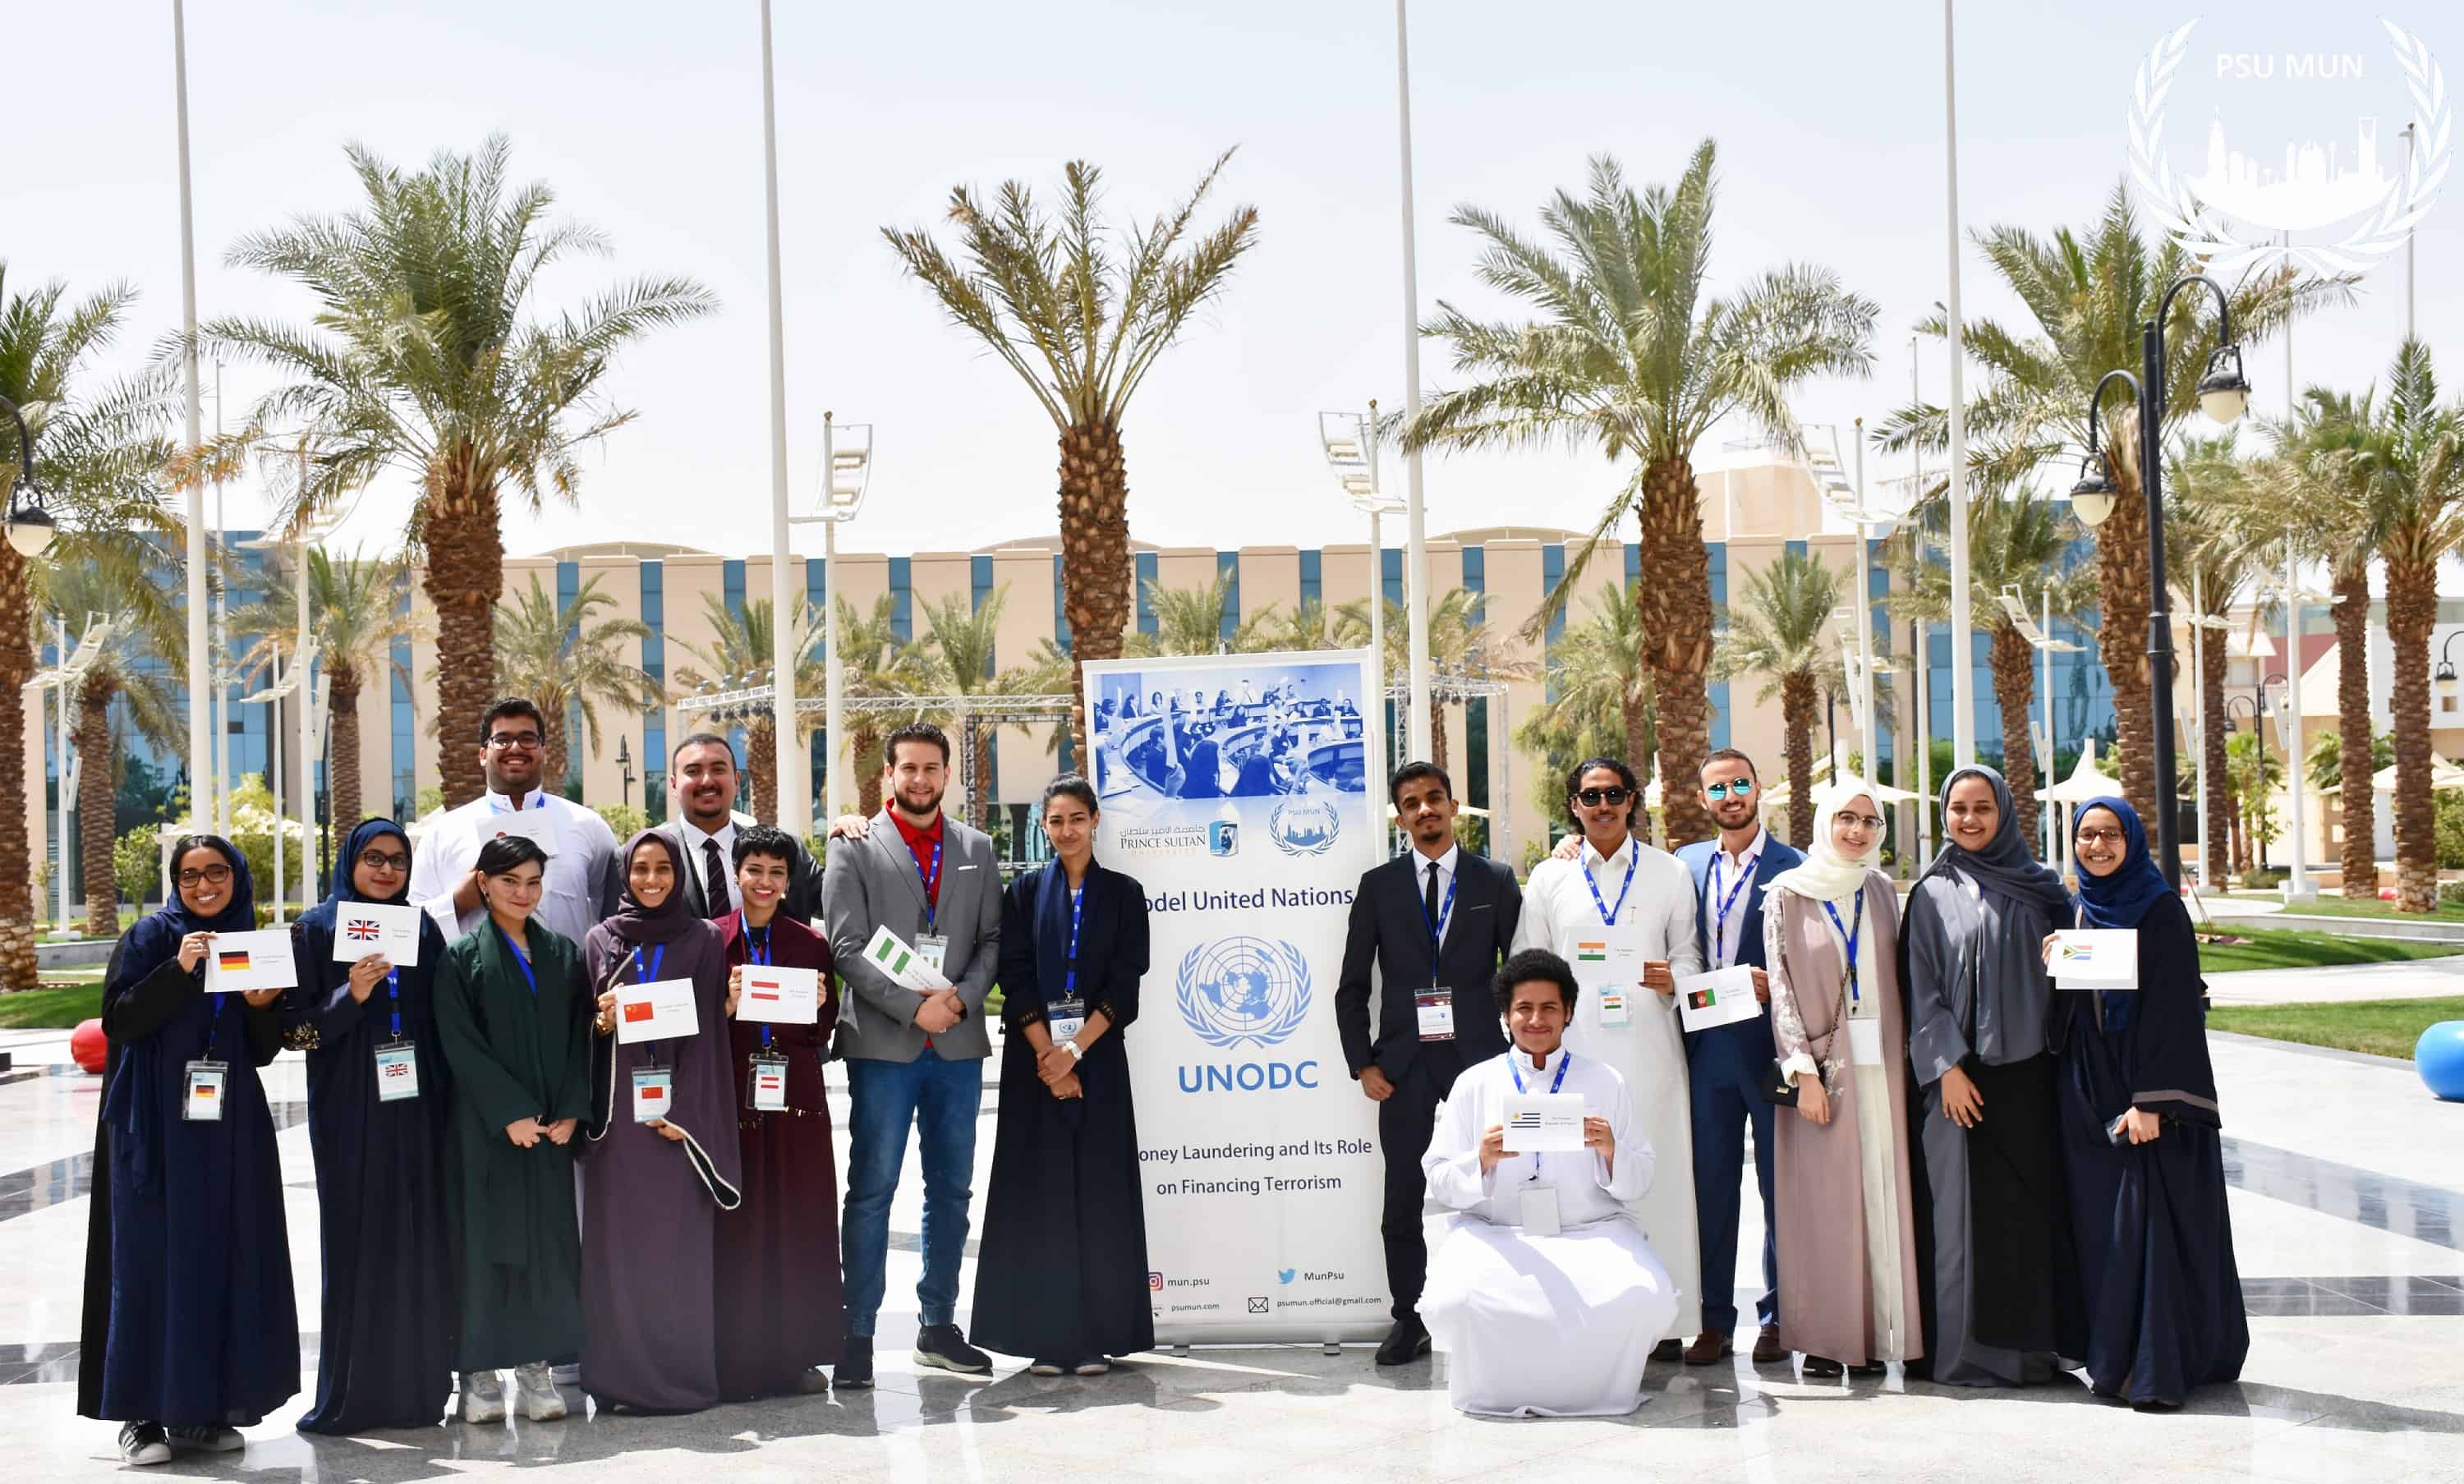 الجامعة نظمت مؤتمر محاكاة نموذج الأمم المتحدة للمرة الأولى، من بين 300 متقدم ومتقدمة من مختلف مناطق المملكة تم قبول 80